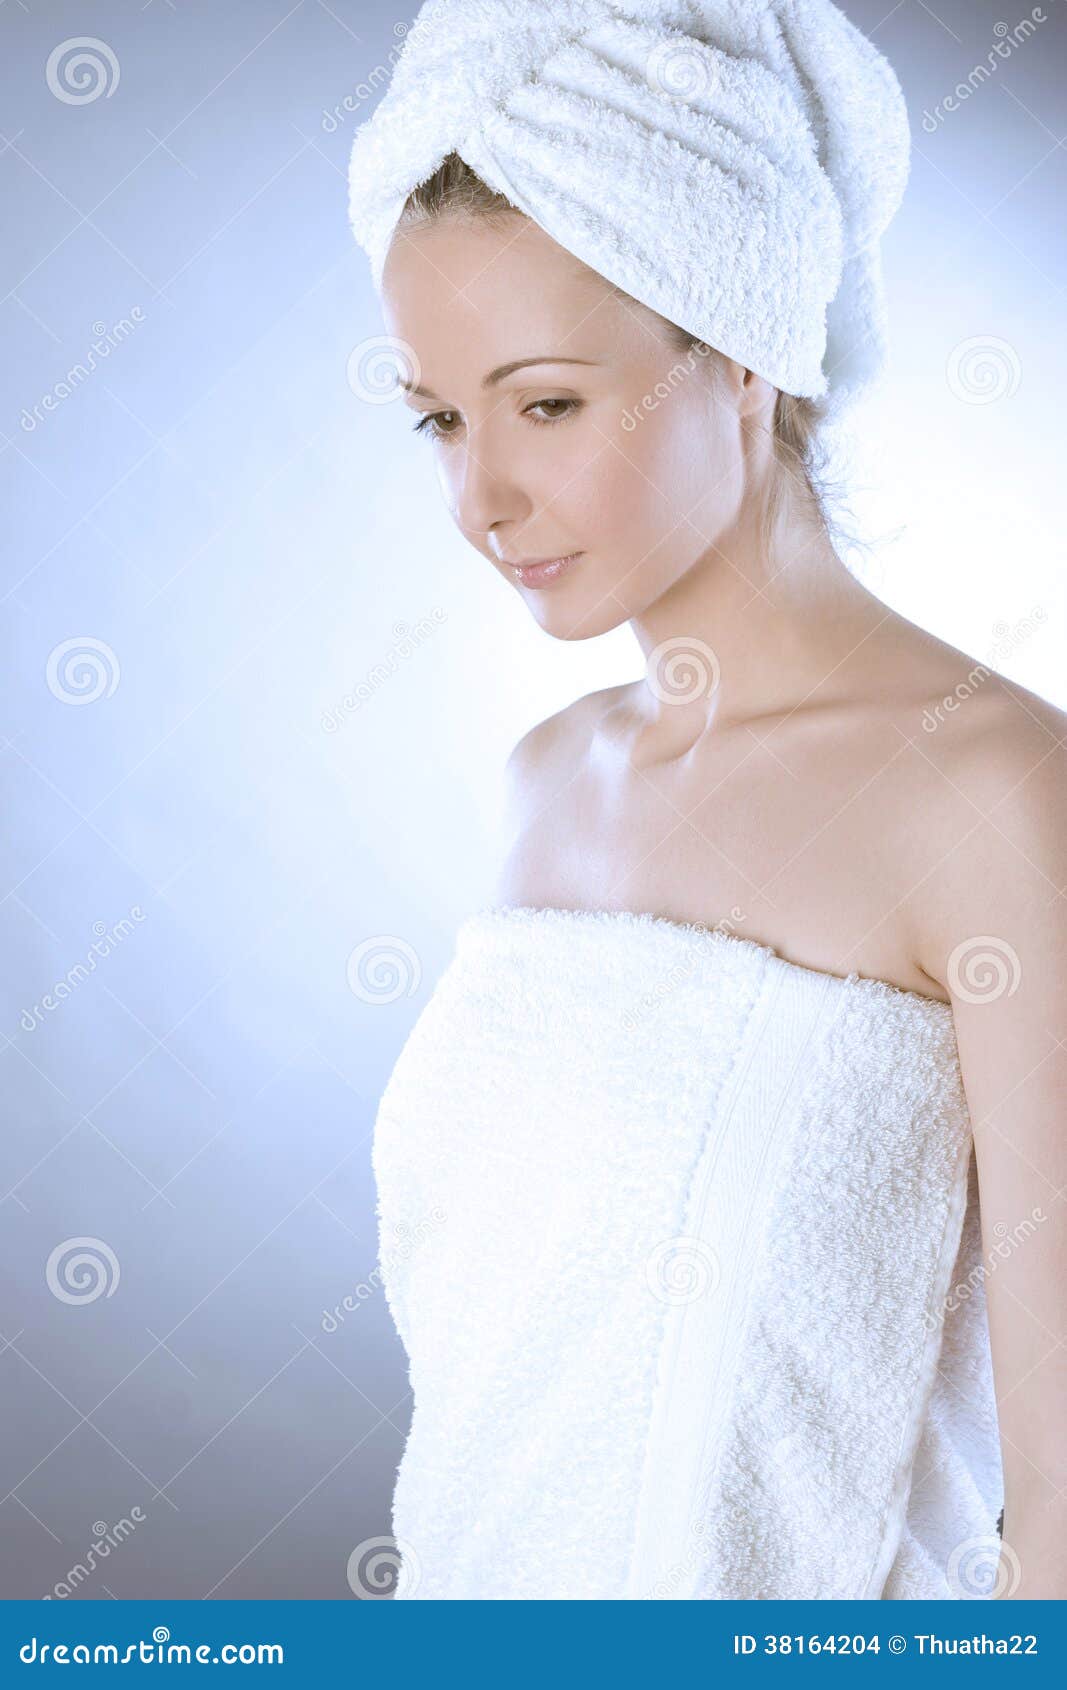 Как завязывать полотенце на голове. Полотенце на голове. Женщина с полотенцем на голове. Полотенце для волос. Полотенце на голове после душа.